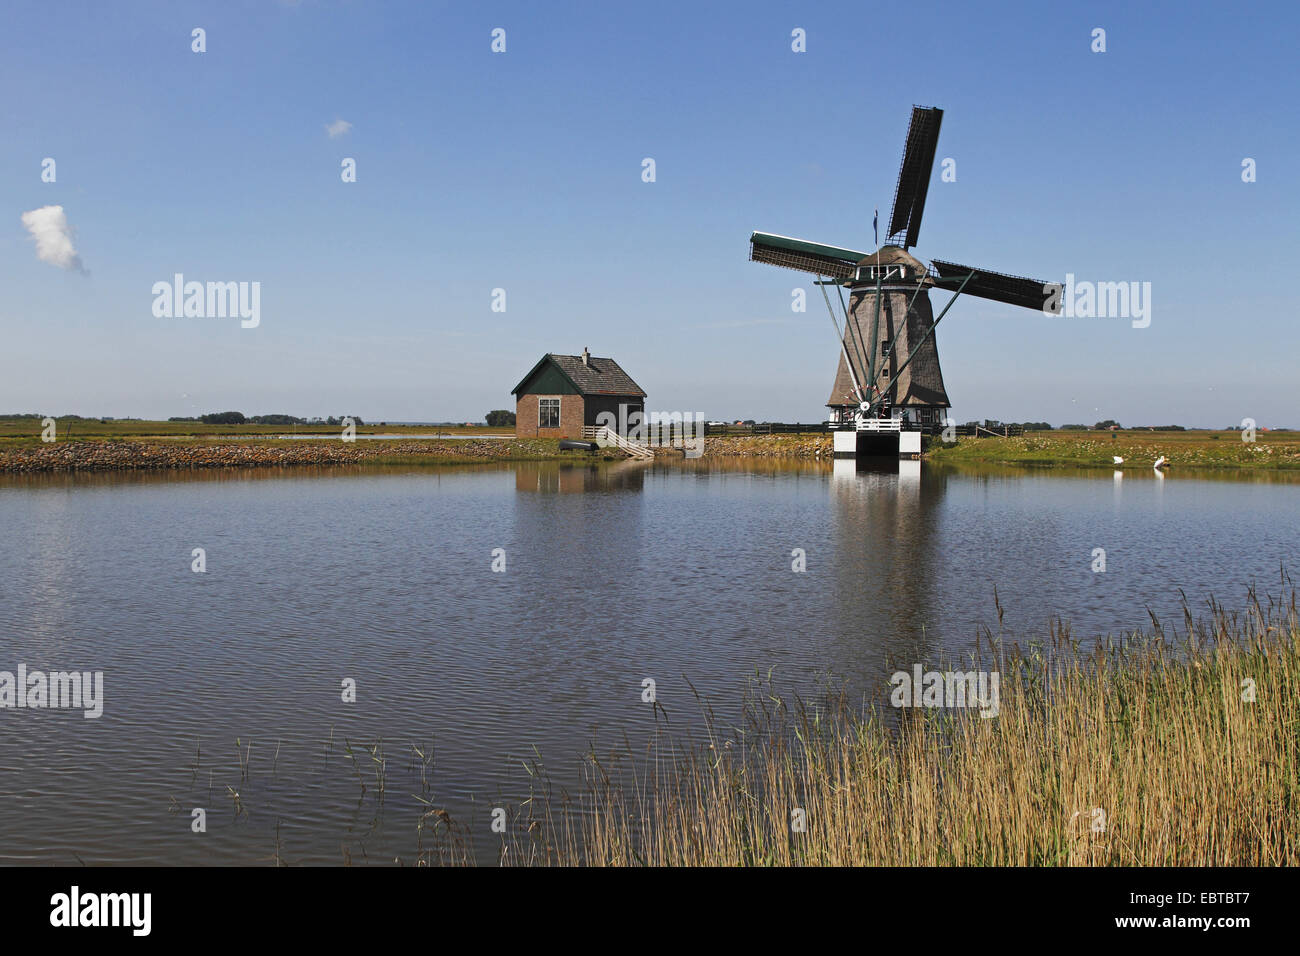 Mulino a vento in un lago, Paesi Bassi, Texel Foto Stock